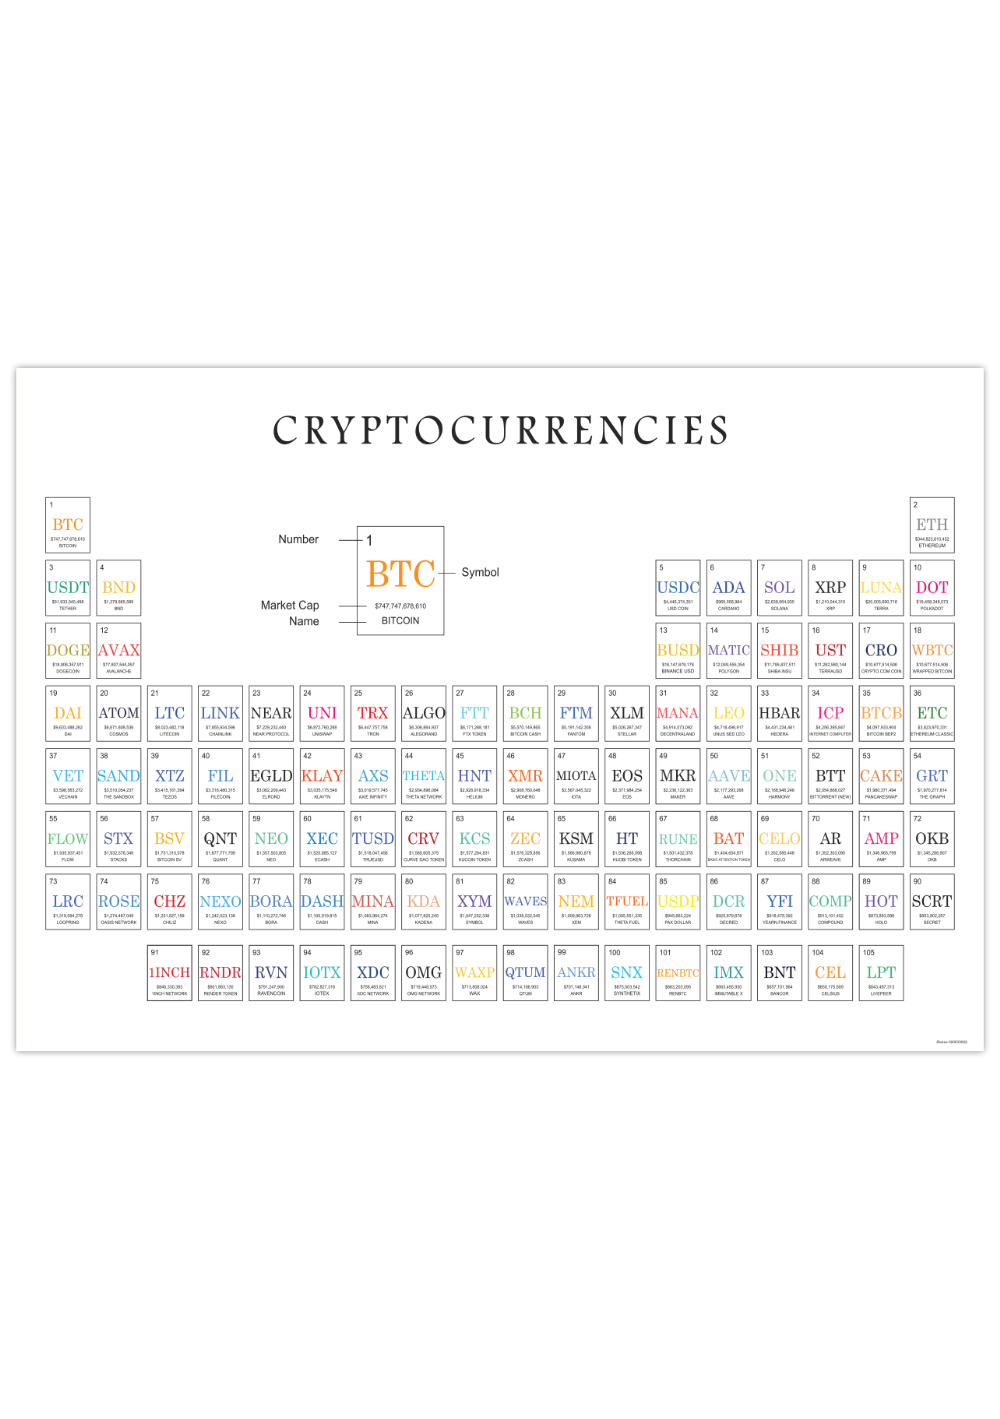 Dieses Poster zeigt dir in einem Periodensystem 105 verschiedene Kryptowährungen, geordnet nach Marktkapitalisierung und inklusive Namen und Abkürzungen.